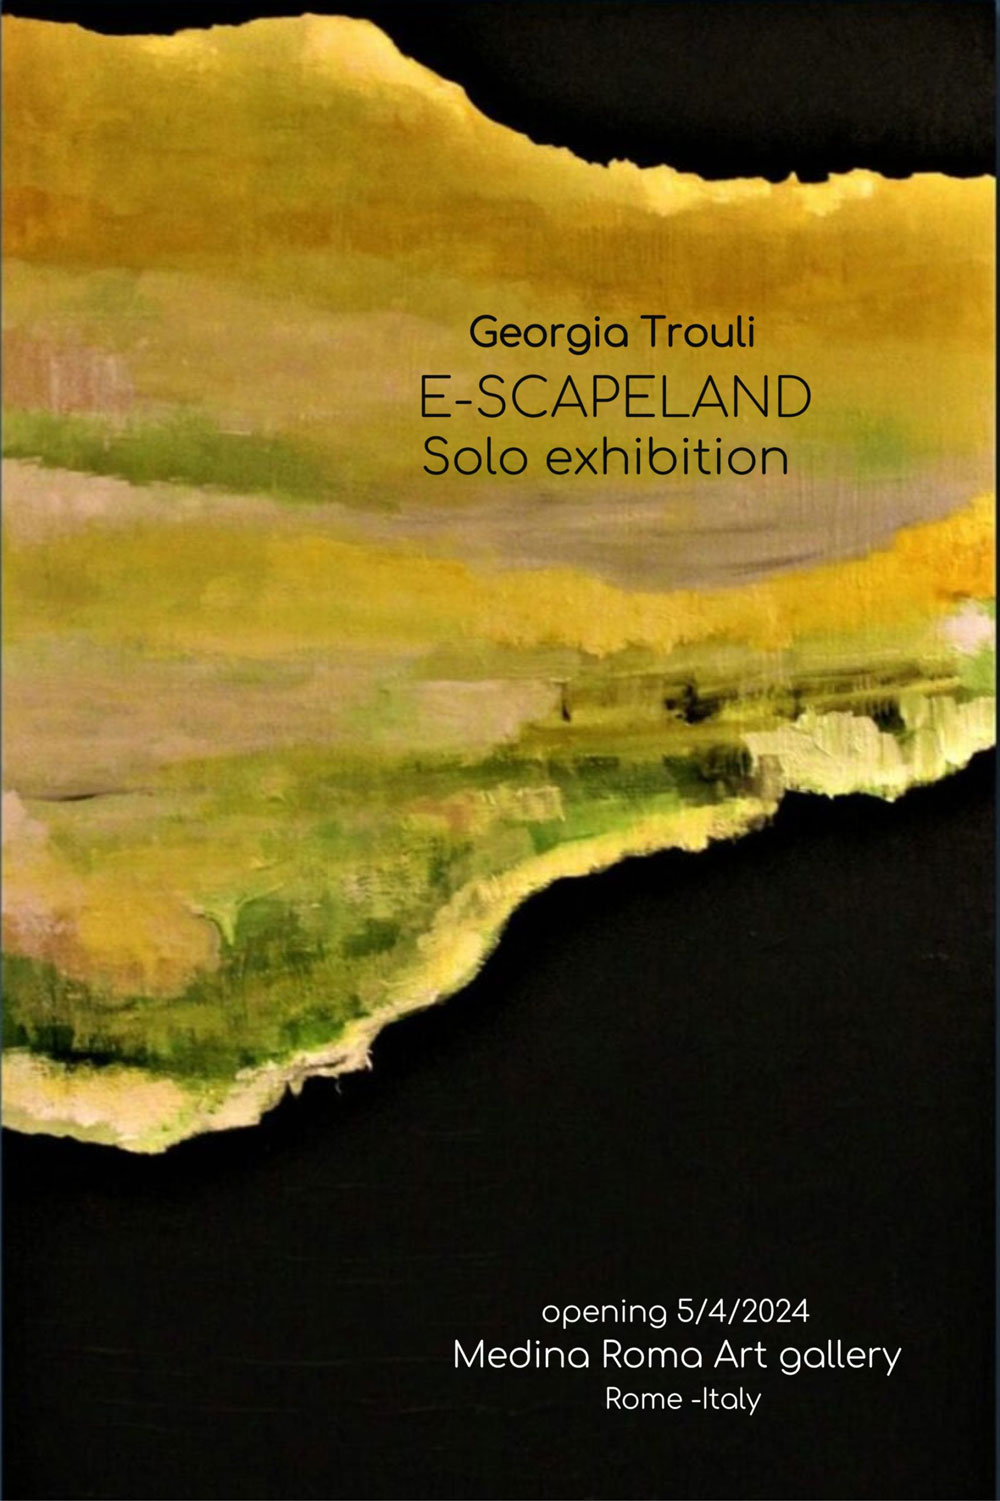 Georgia Trouli solo exhibit E-SCAPELAND